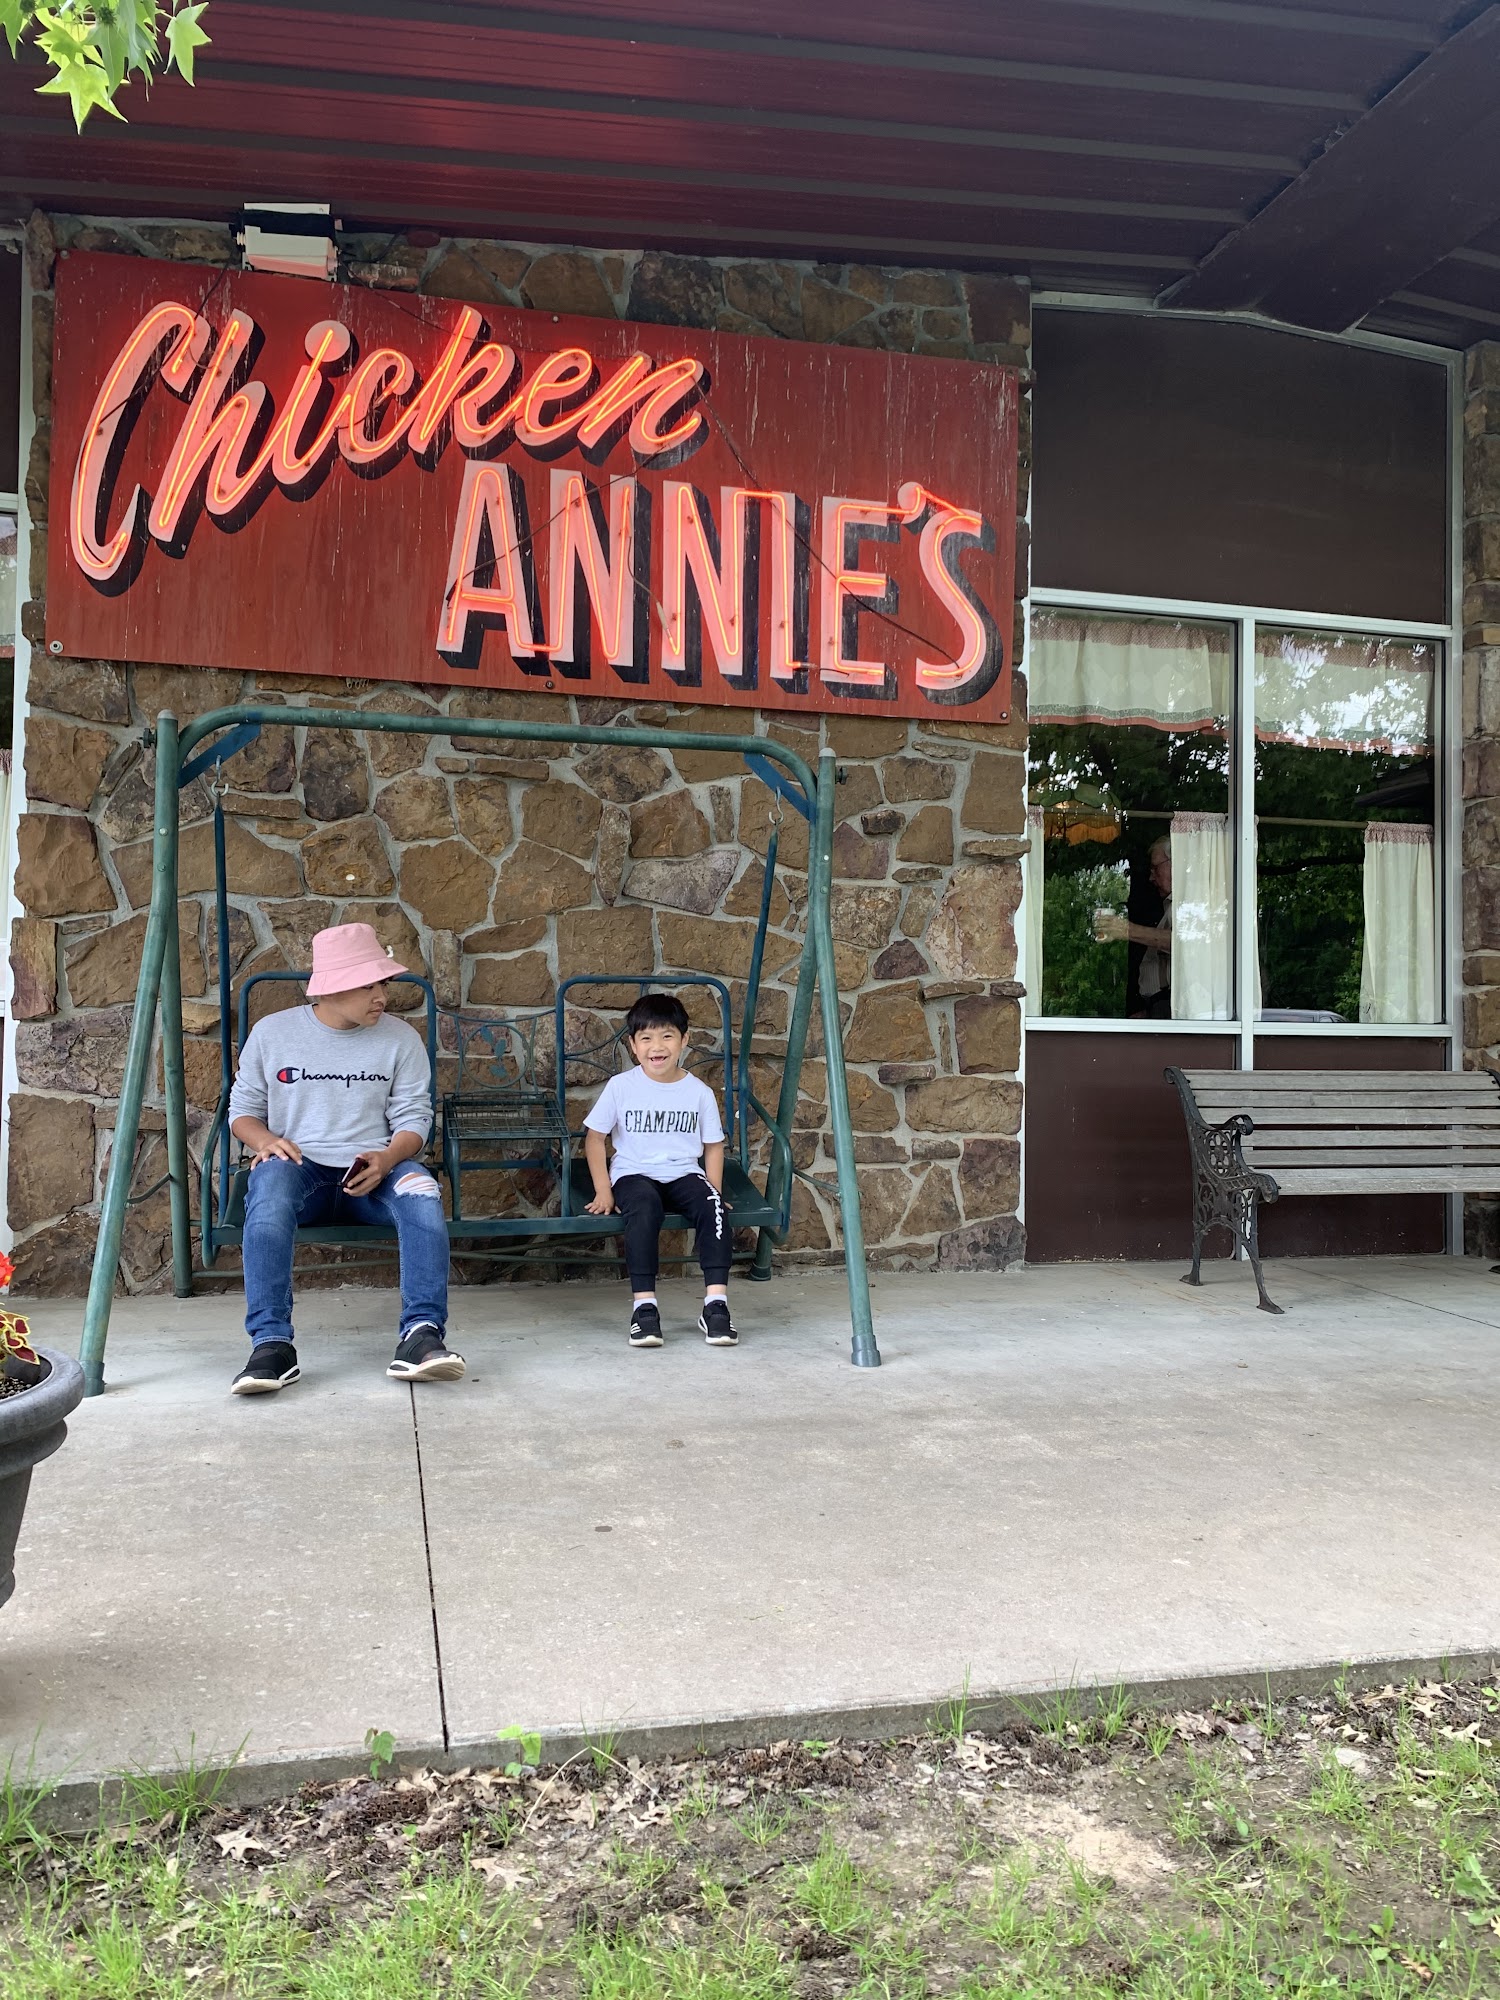 Chicken Annie's Original